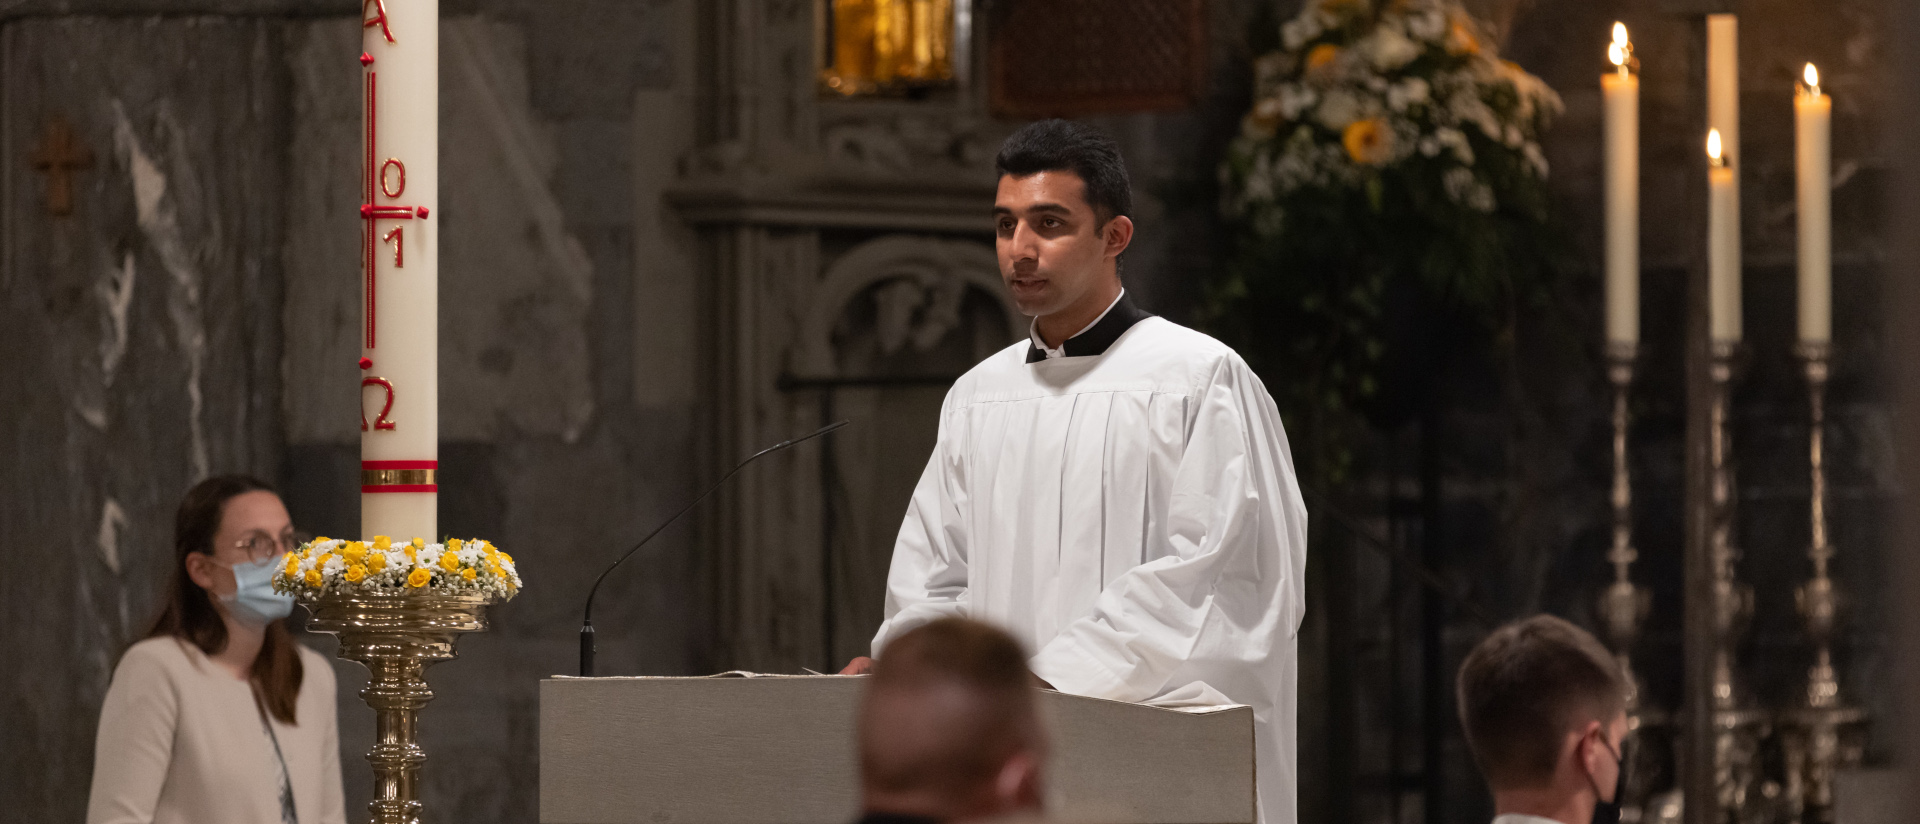 Agil Raju wird zum Priester geweiht - hier bei den Fürbitten an Ostern 2021 in Chur.